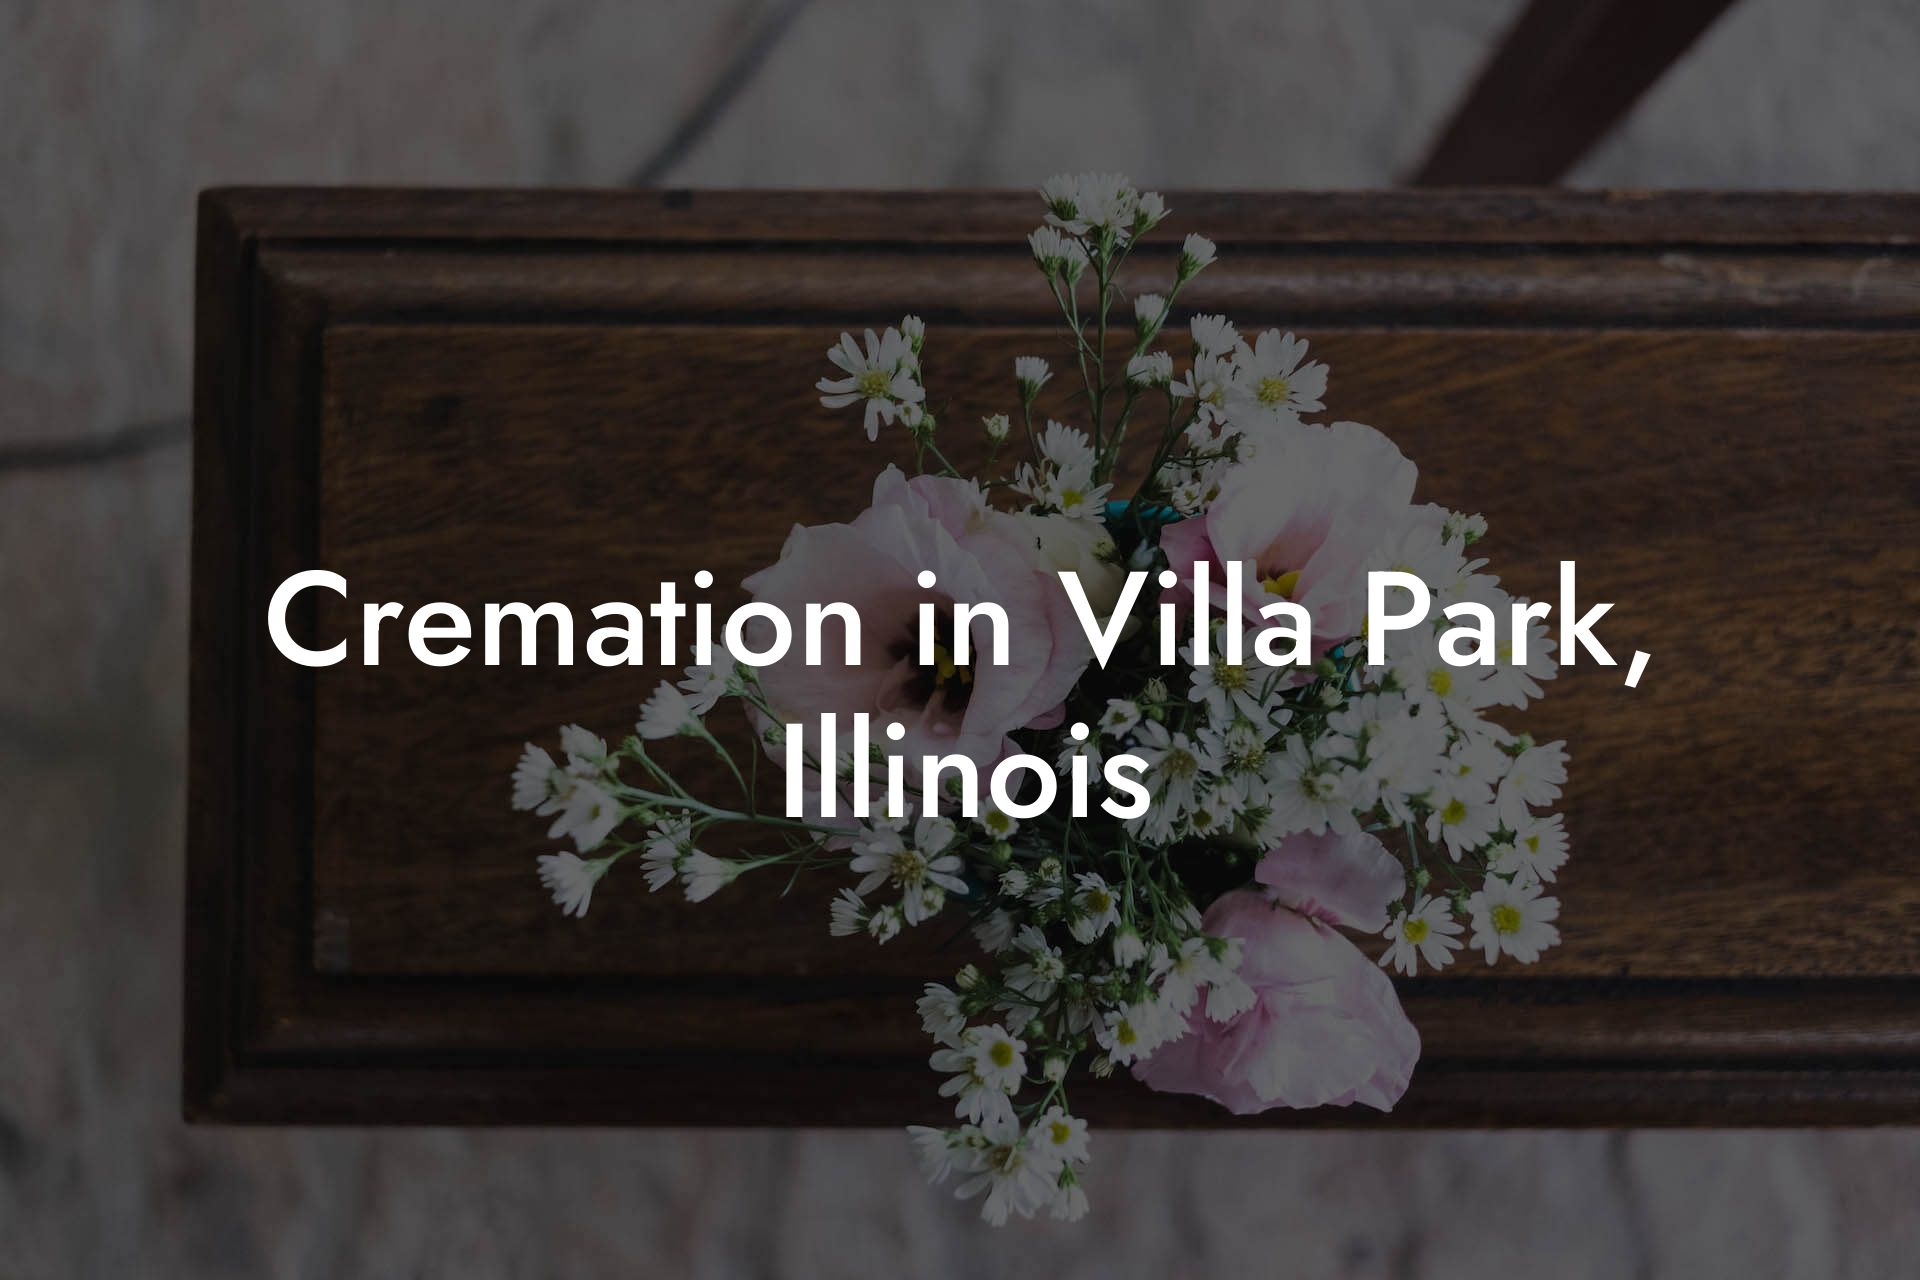 Cremation in Villa Park, Illinois